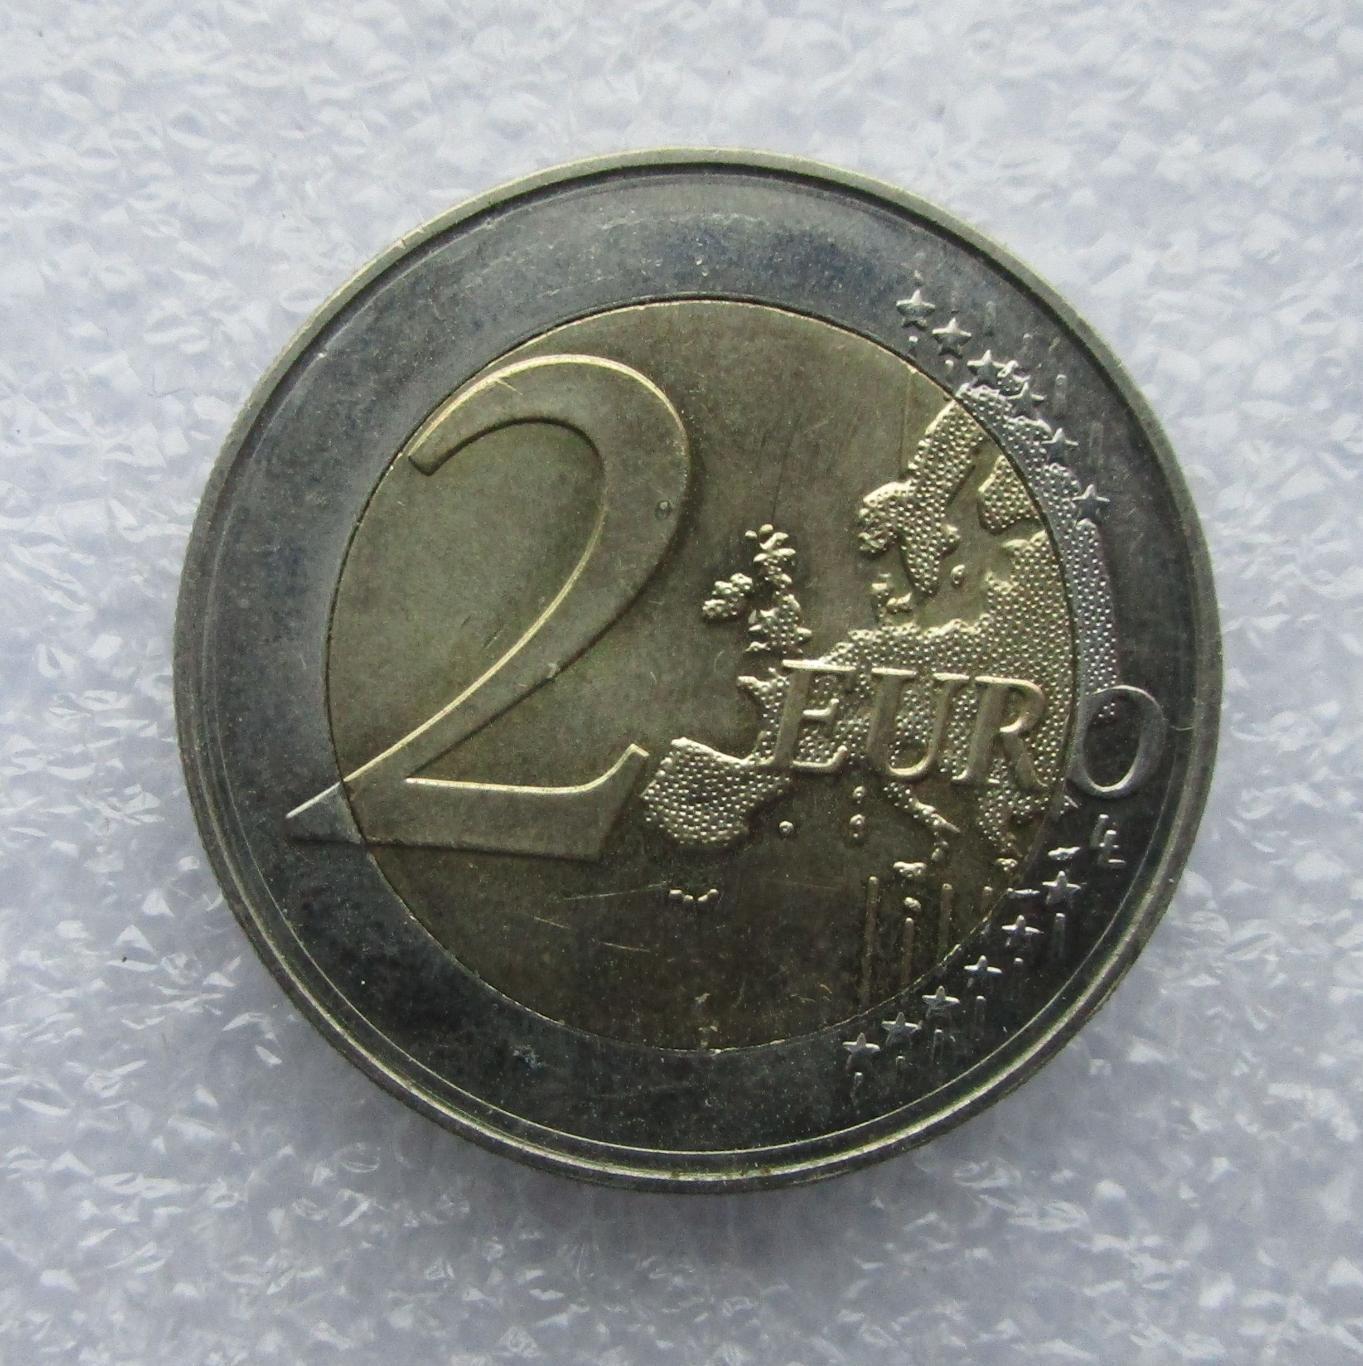 Словакия 2 Евро 2009. UNC. Штемпельный блеск. 2